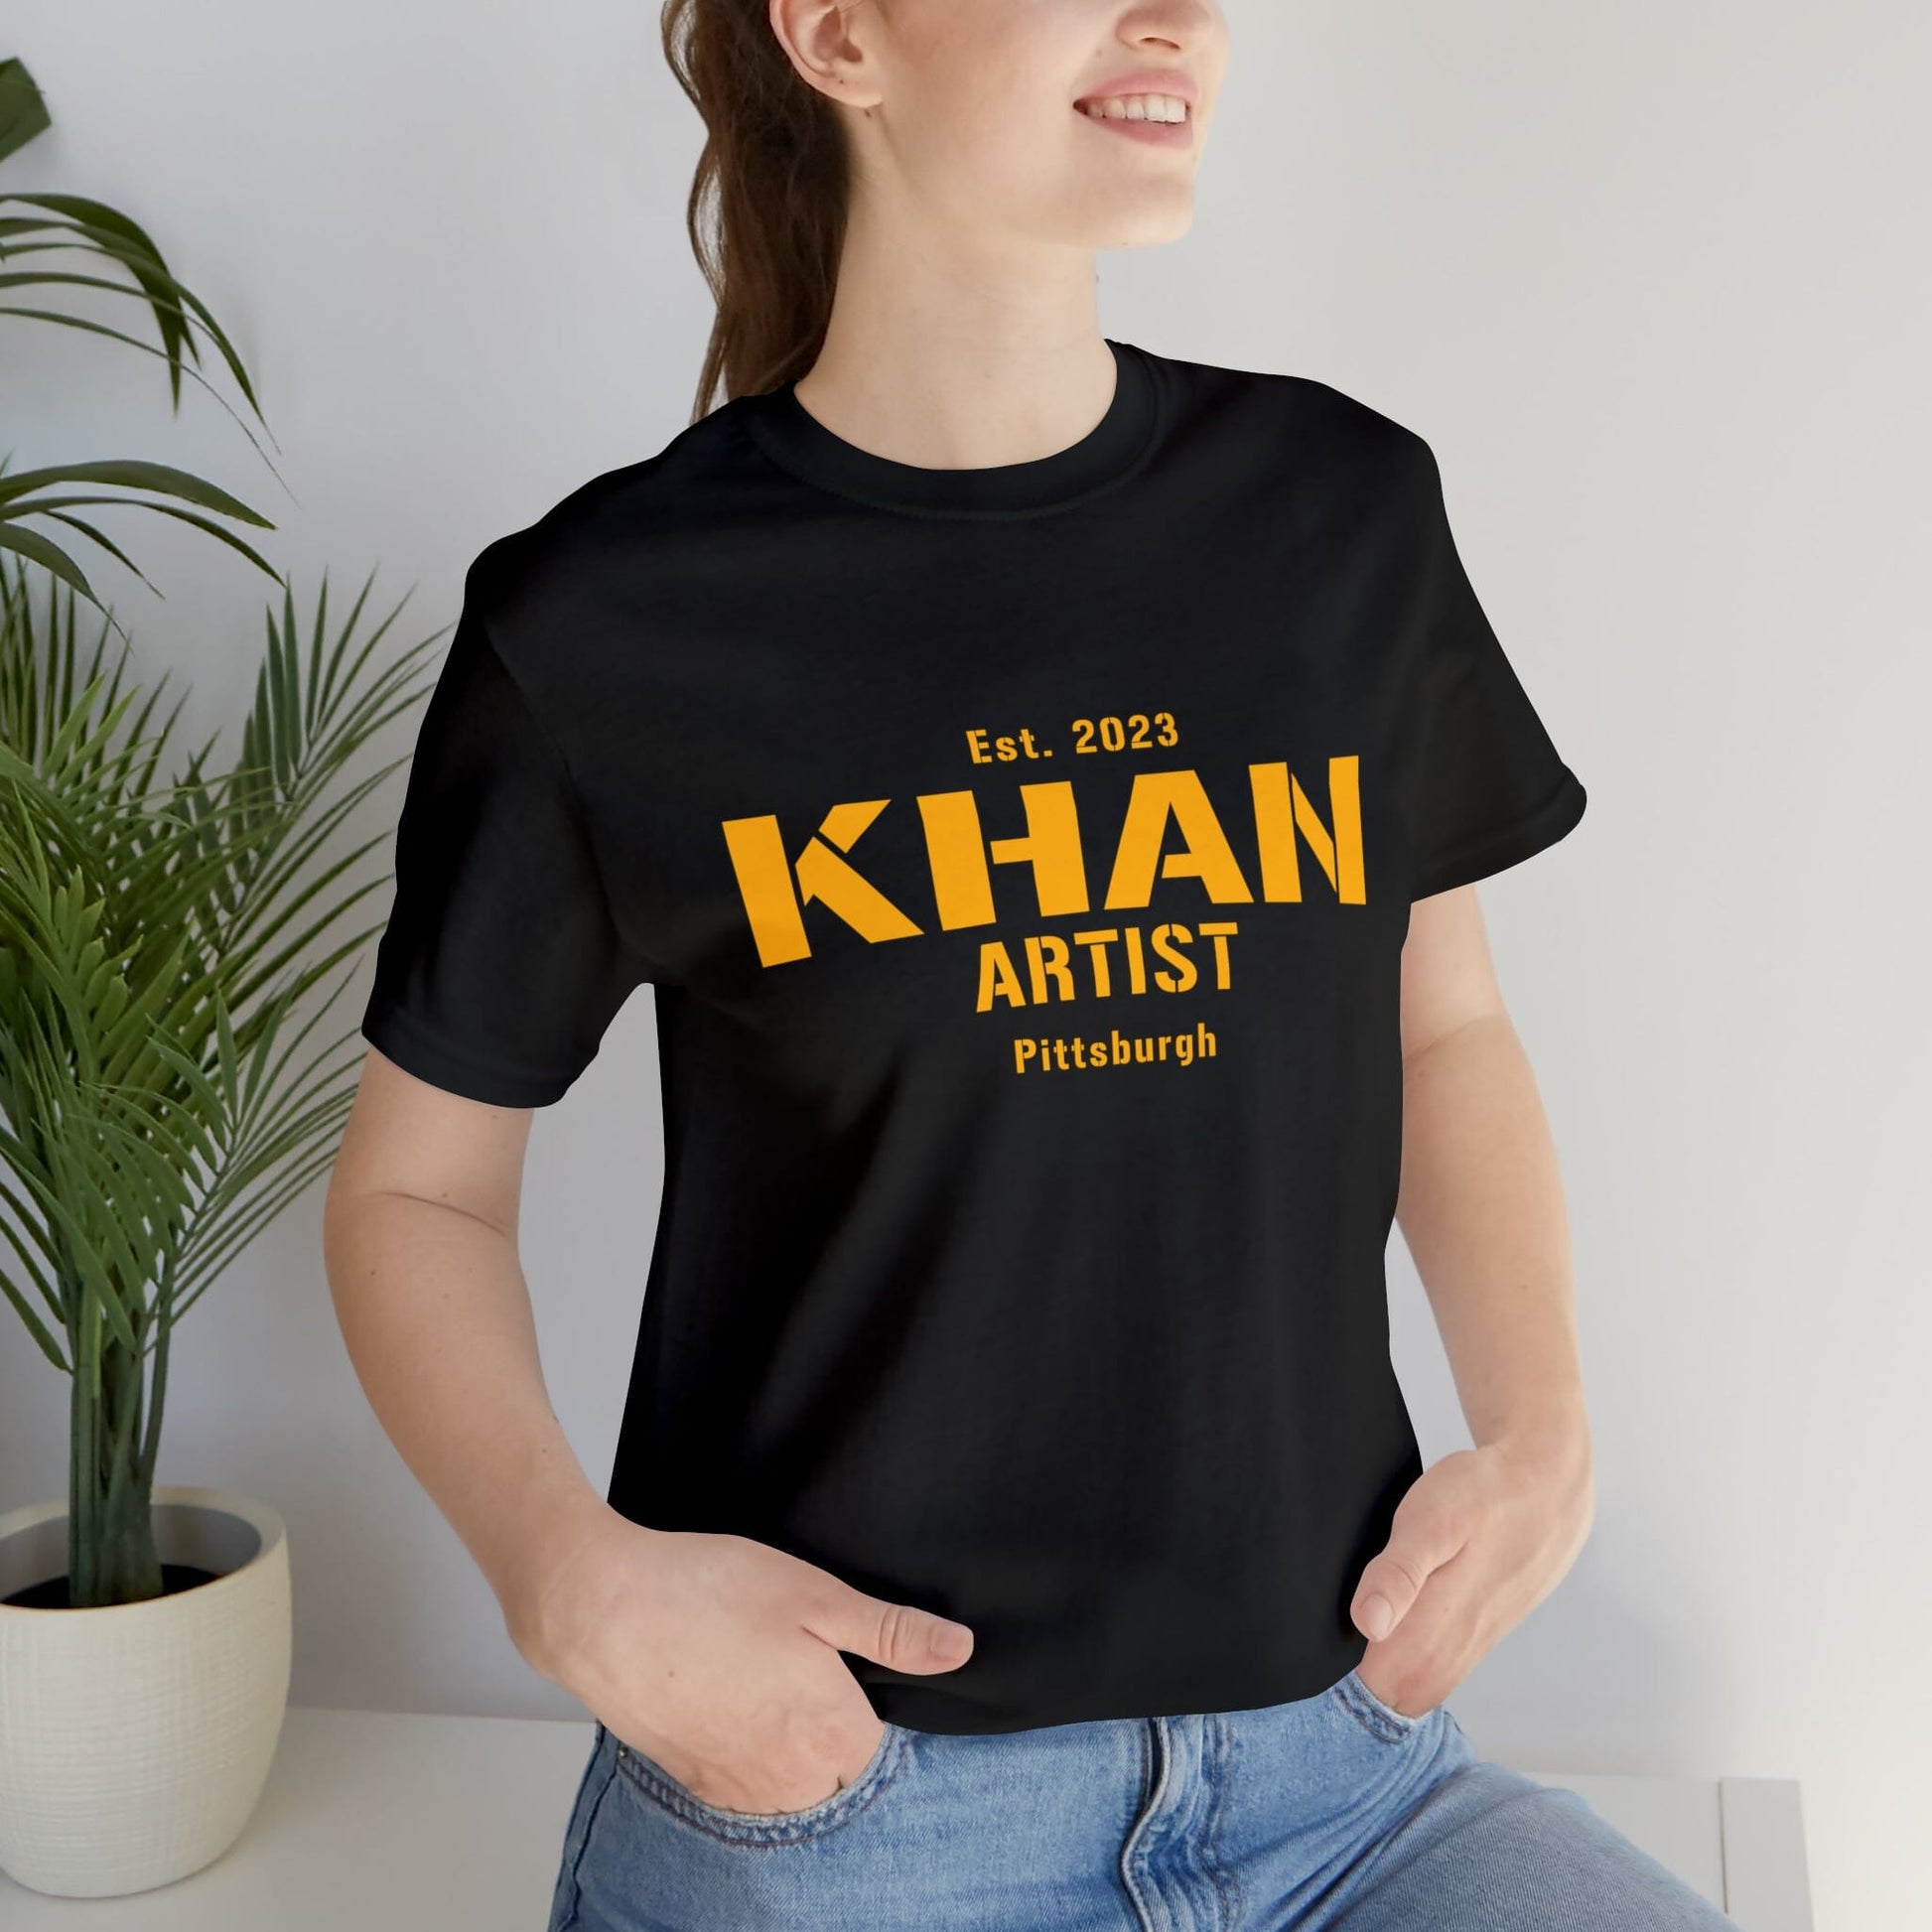 Khan Artist T-Shirt T-Shirt Printify Black S 